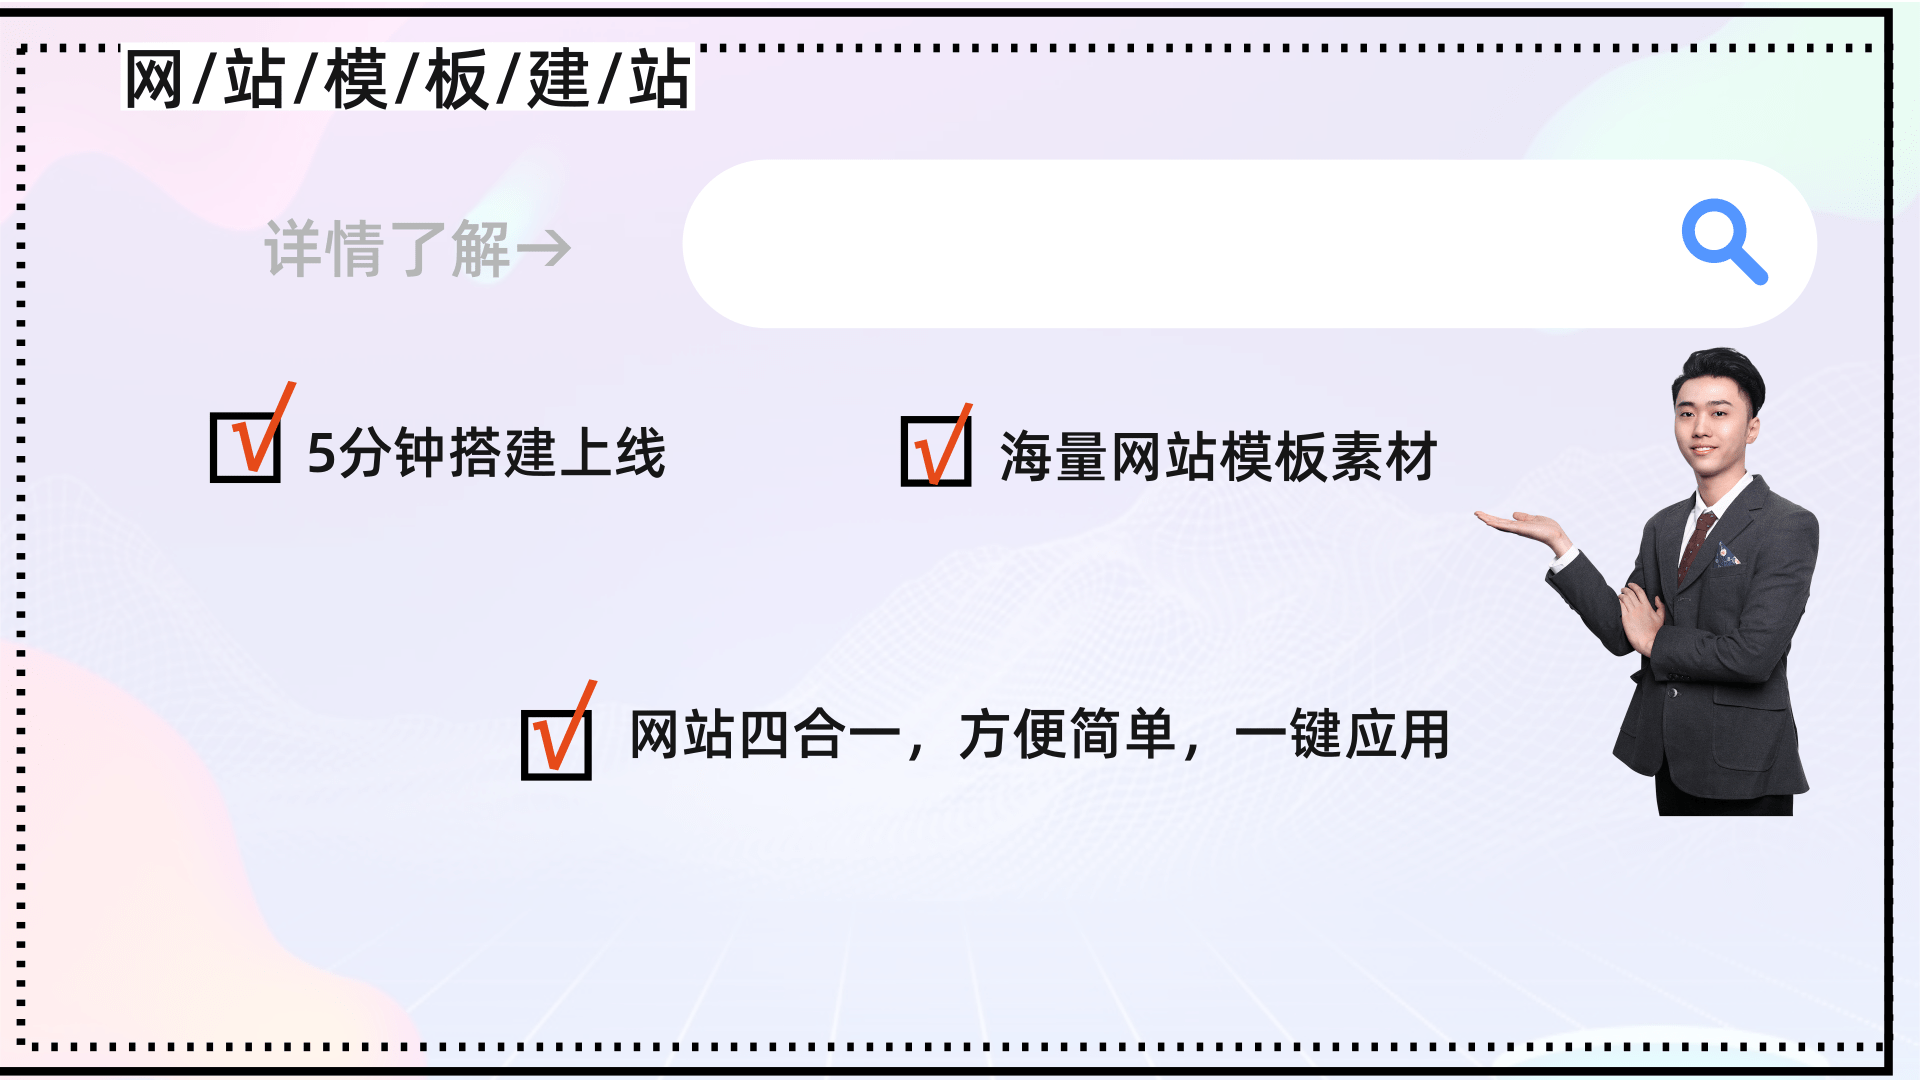 广州白云网站建设哪家公司好?广州白云普通网站建设哪家好?